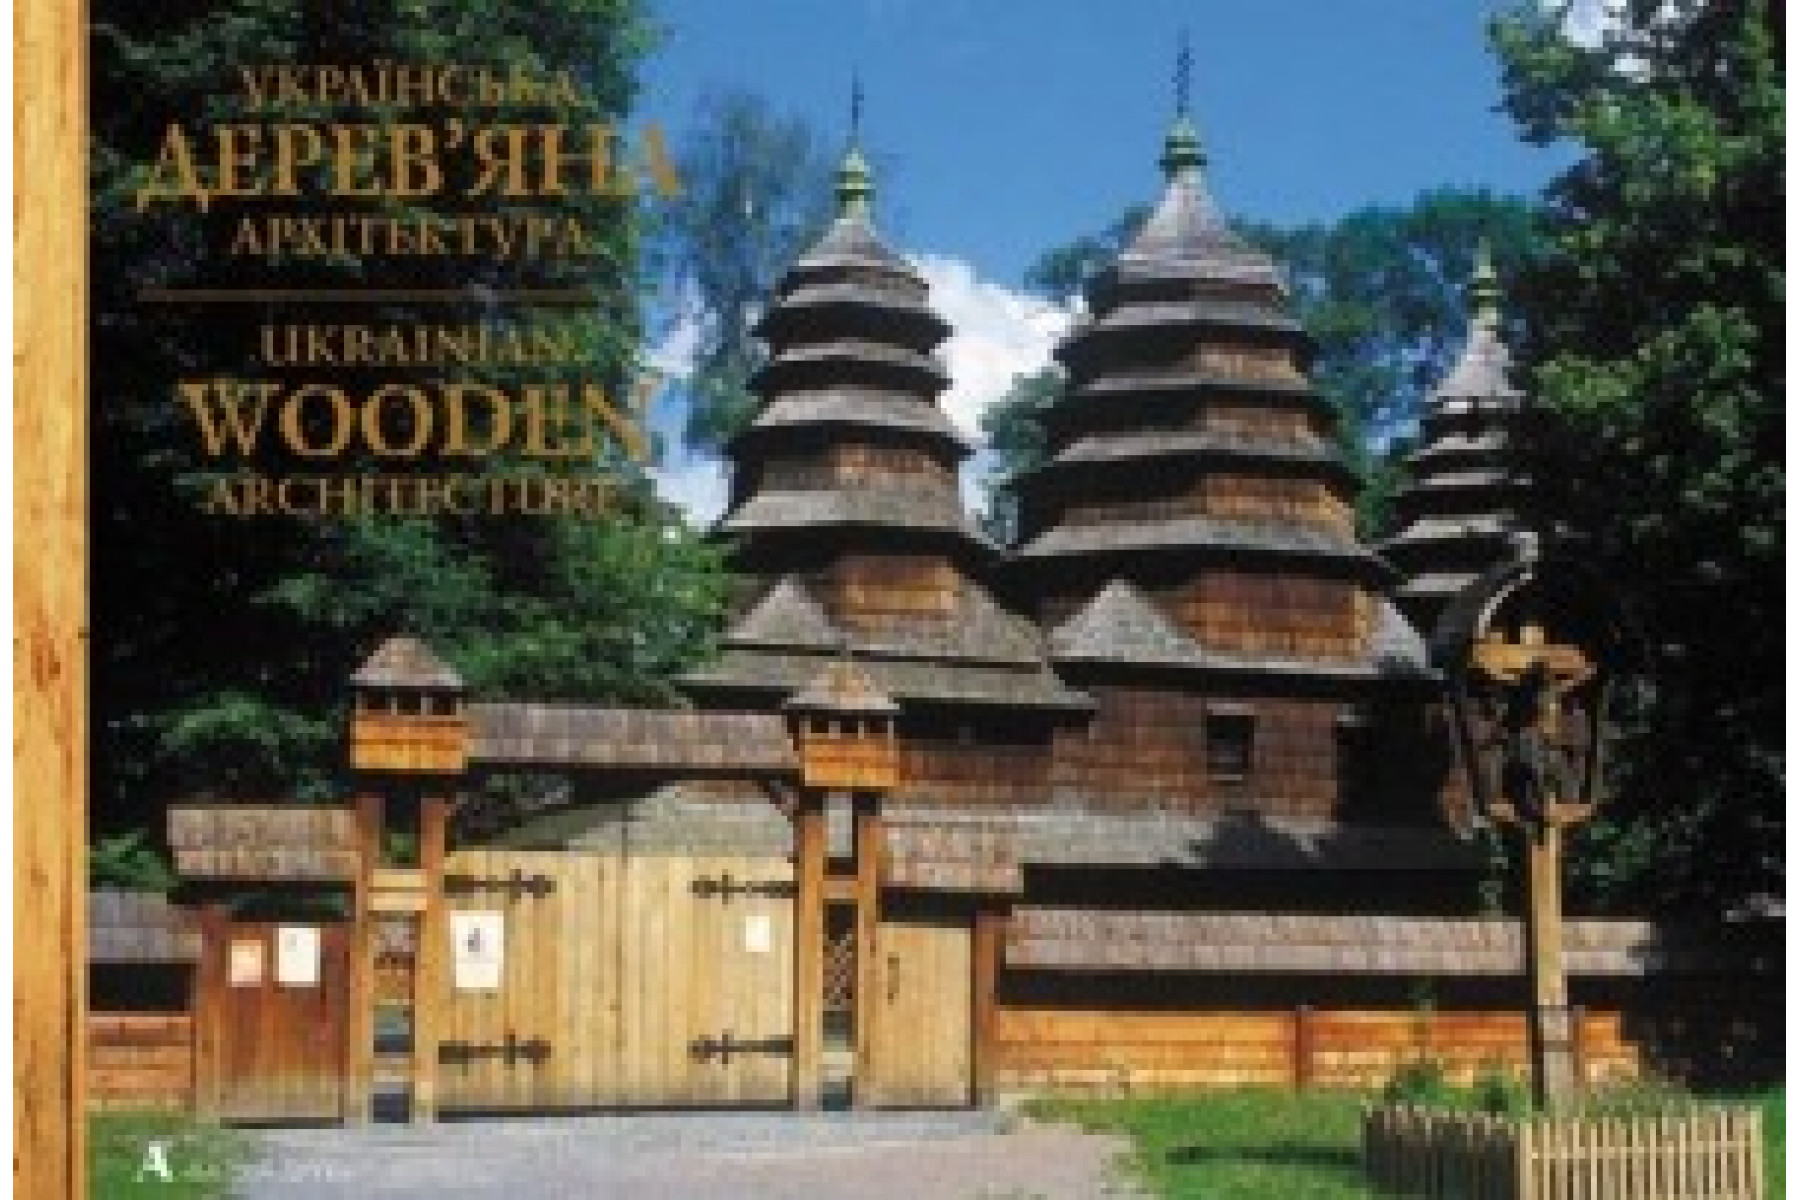 Ukrainian wooden architecture